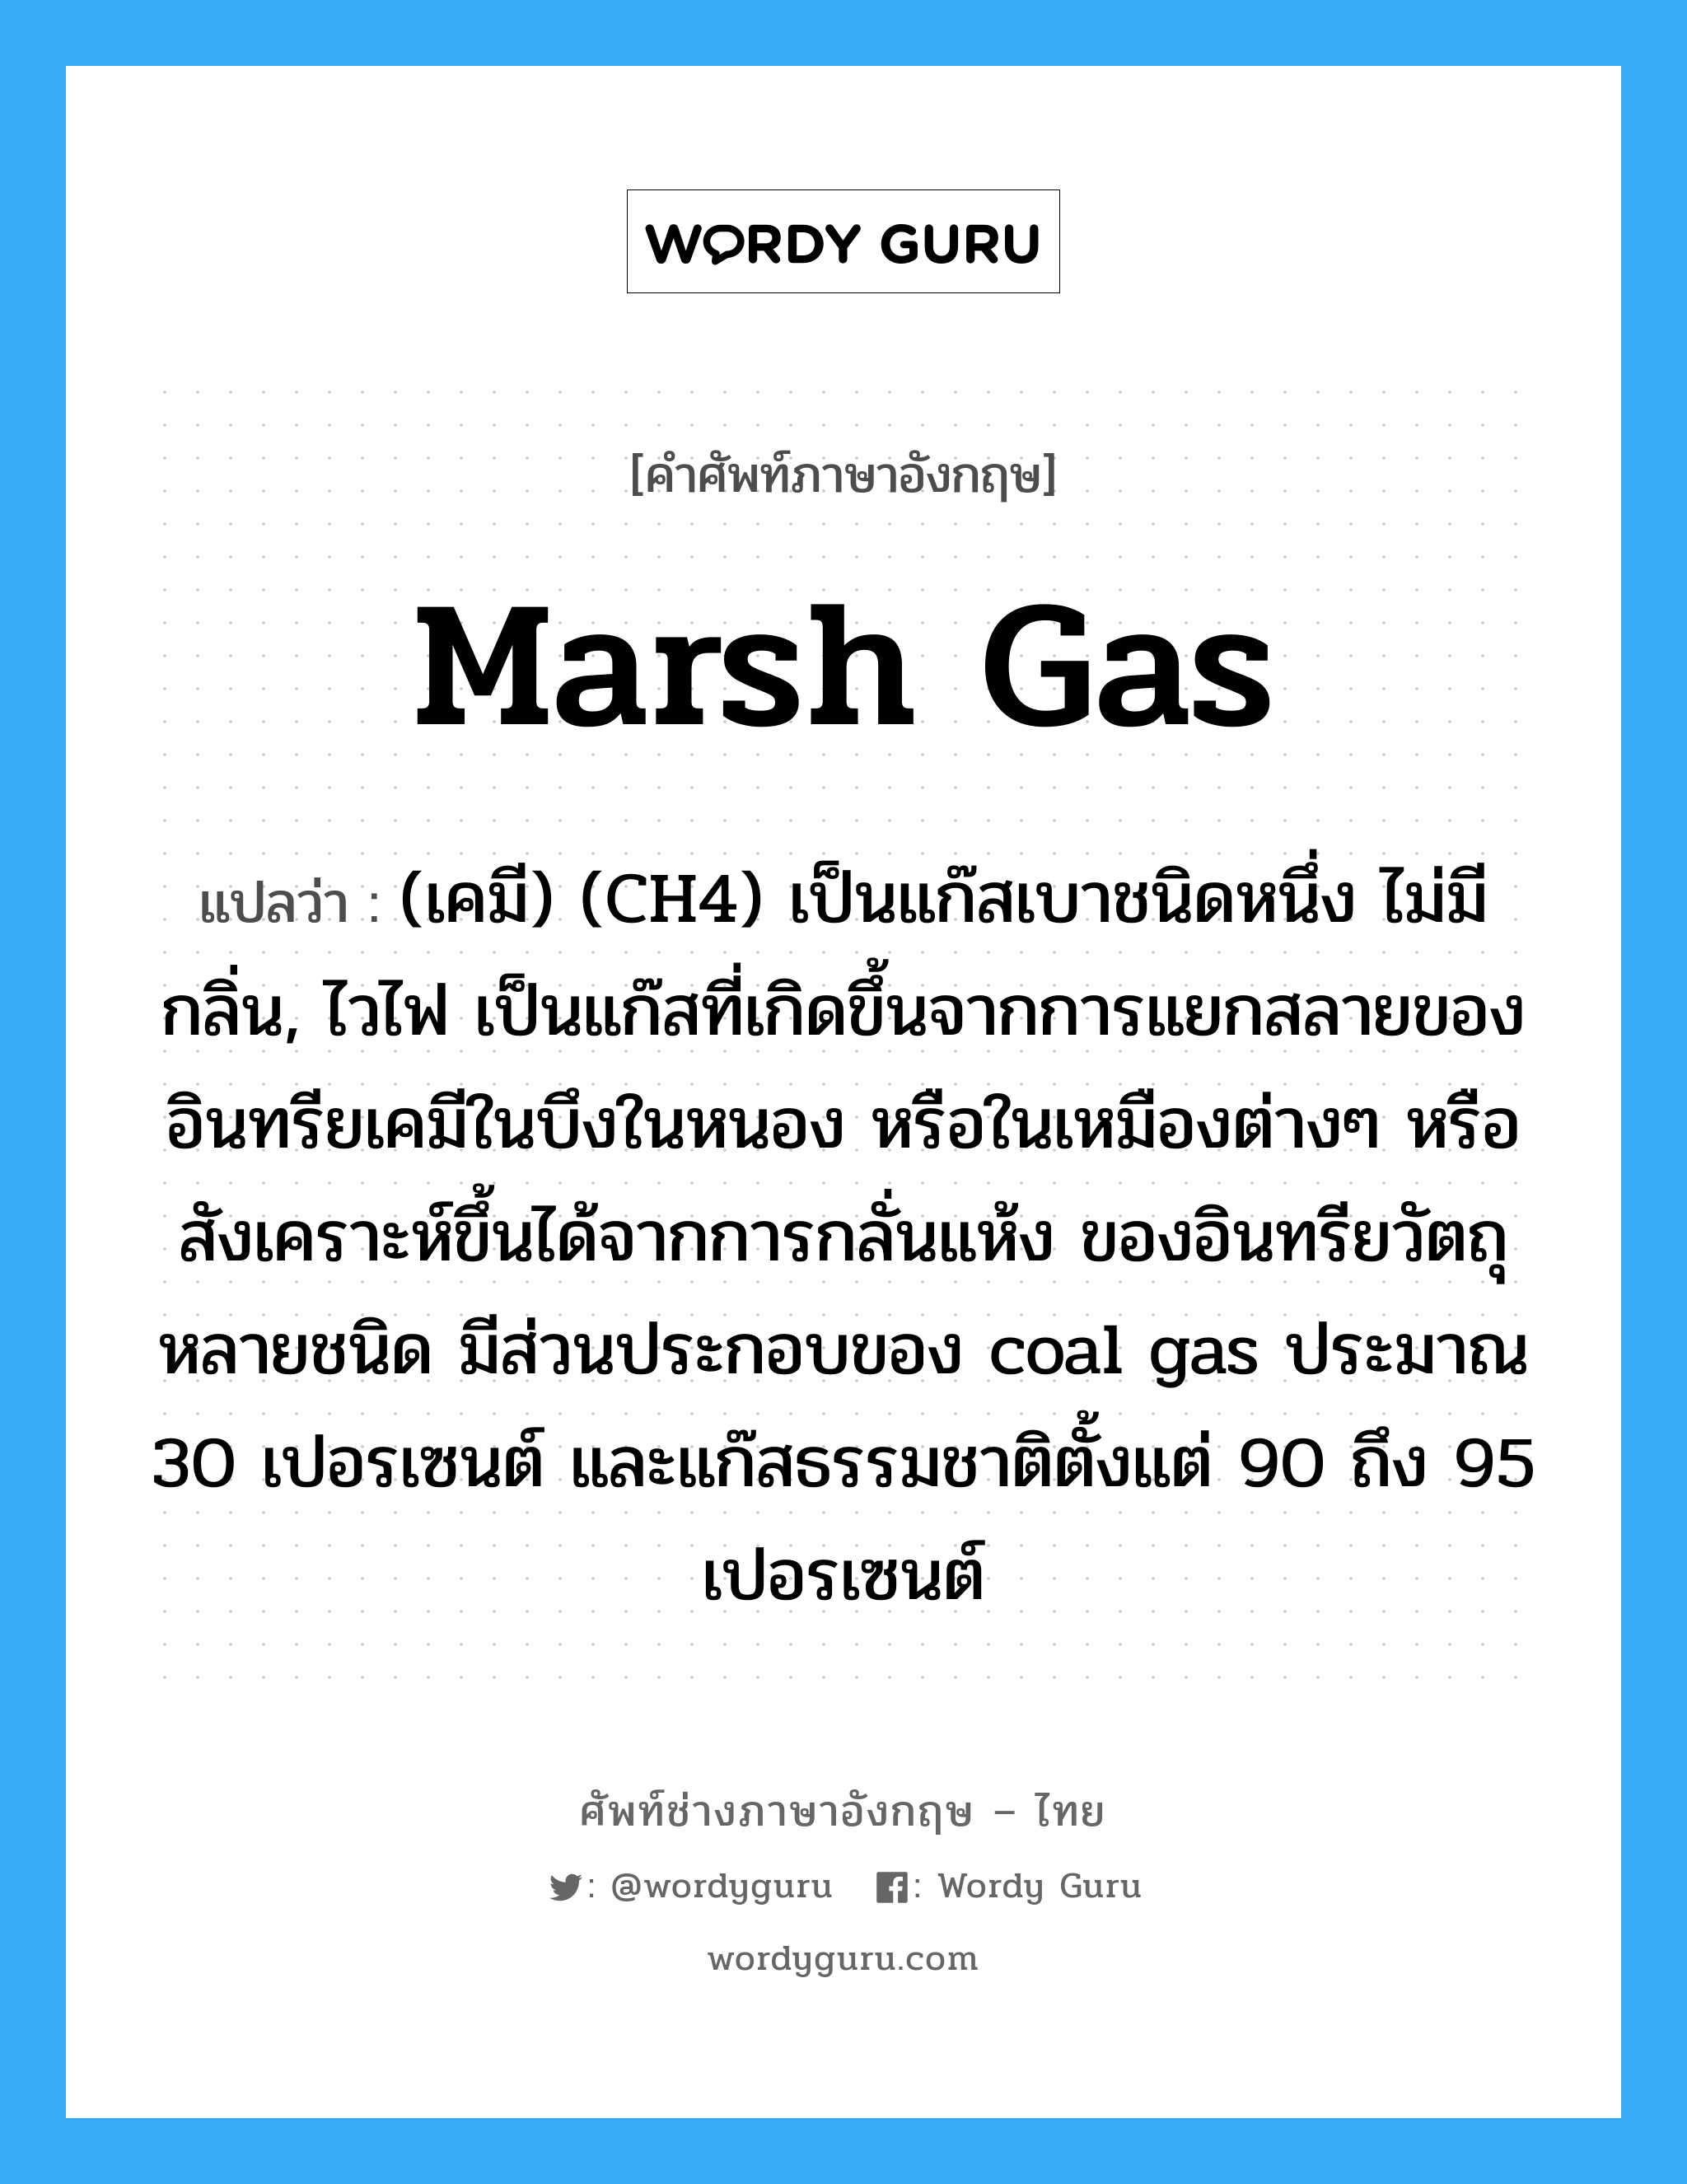 marsh gas แปลว่า?, คำศัพท์ช่างภาษาอังกฤษ - ไทย marsh gas คำศัพท์ภาษาอังกฤษ marsh gas แปลว่า (เคมี) (CH4) เป็นแก๊สเบาชนิดหนึ่ง ไม่มีกลิ่น, ไวไฟ เป็นแก๊สที่เกิดขึ้นจากการแยกสลายของอินทรียเคมีในบึงในหนอง หรือในเหมืองต่างๆ หรือสังเคราะห์ขึ้นได้จากการกลั่นแห้ง ของอินทรียวัตถุหลายชนิด มีส่วนประกอบของ coal gas ประมาณ 30 เปอรเซนต์ และแก๊สธรรมชาติตั้งแต่ 90 ถึง 95 เปอรเซนต์